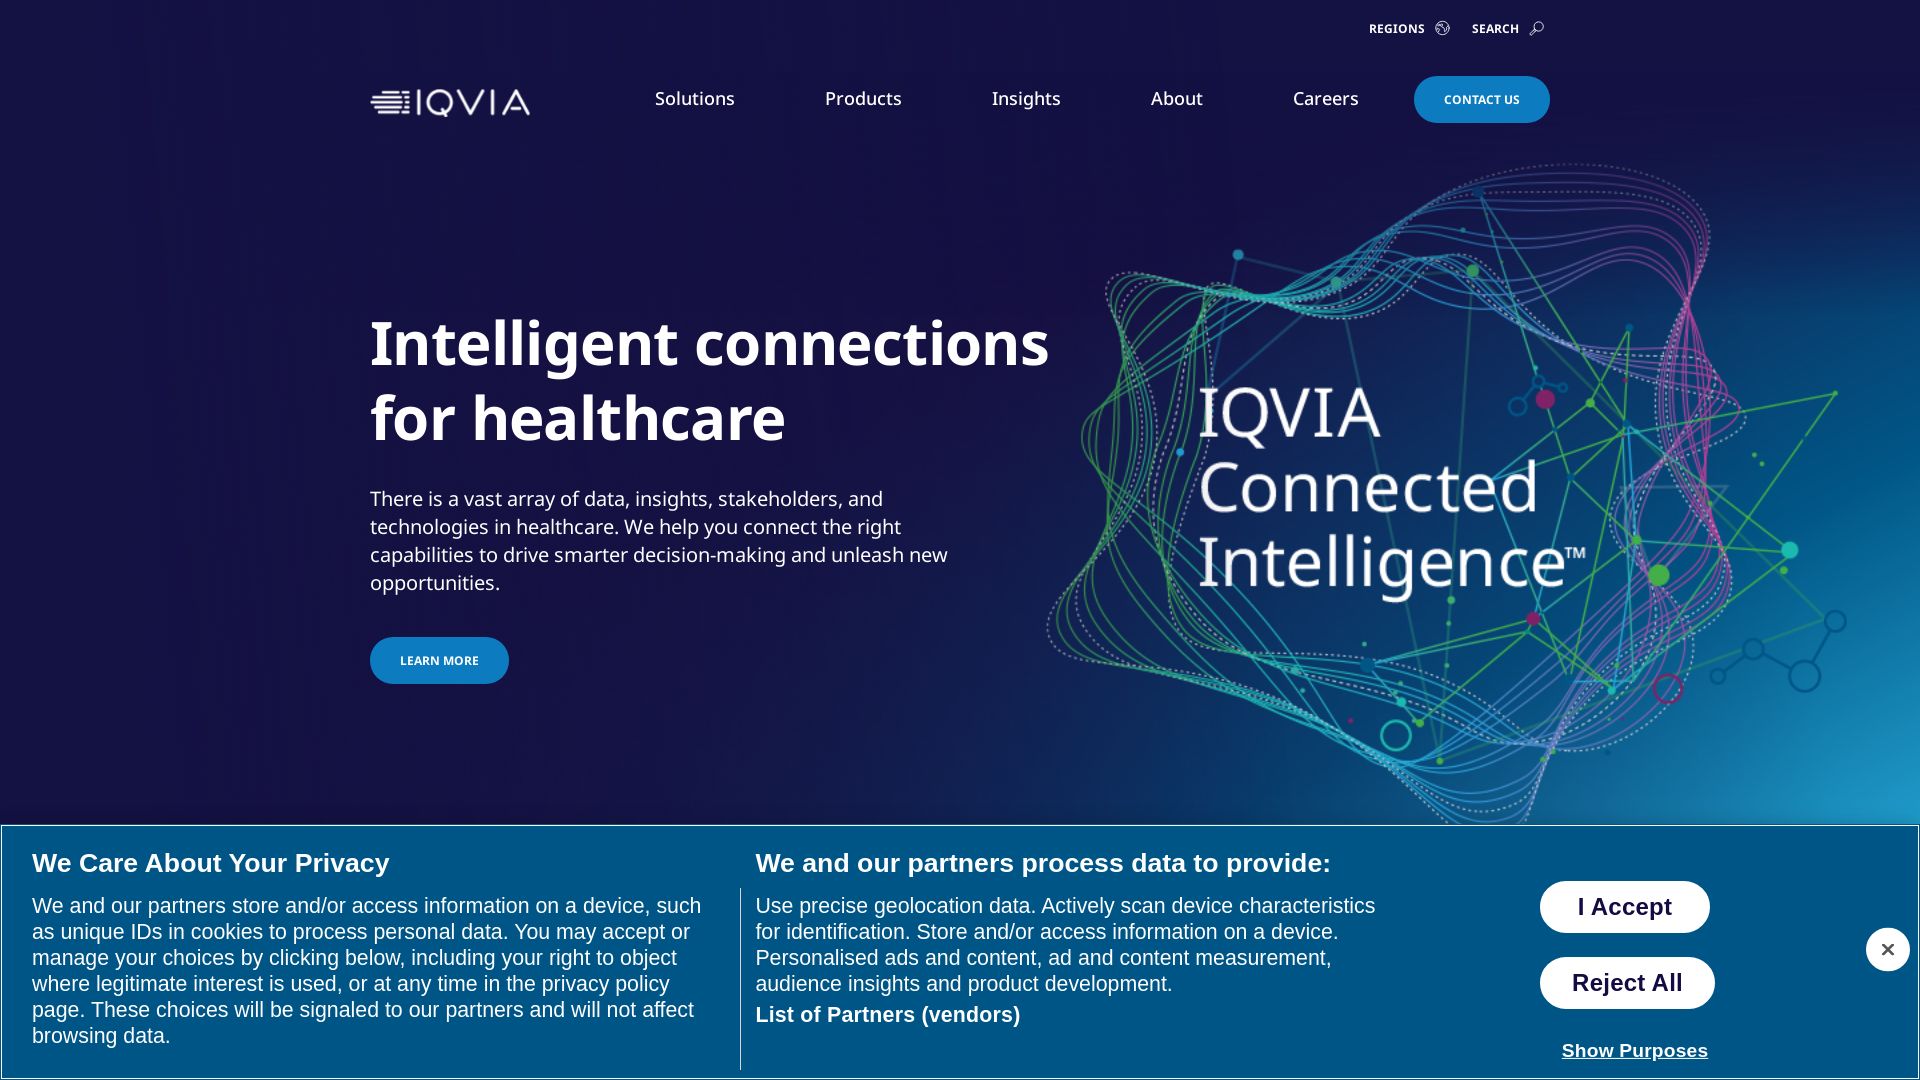 Stato del sito web iqvia.com è   ONLINE